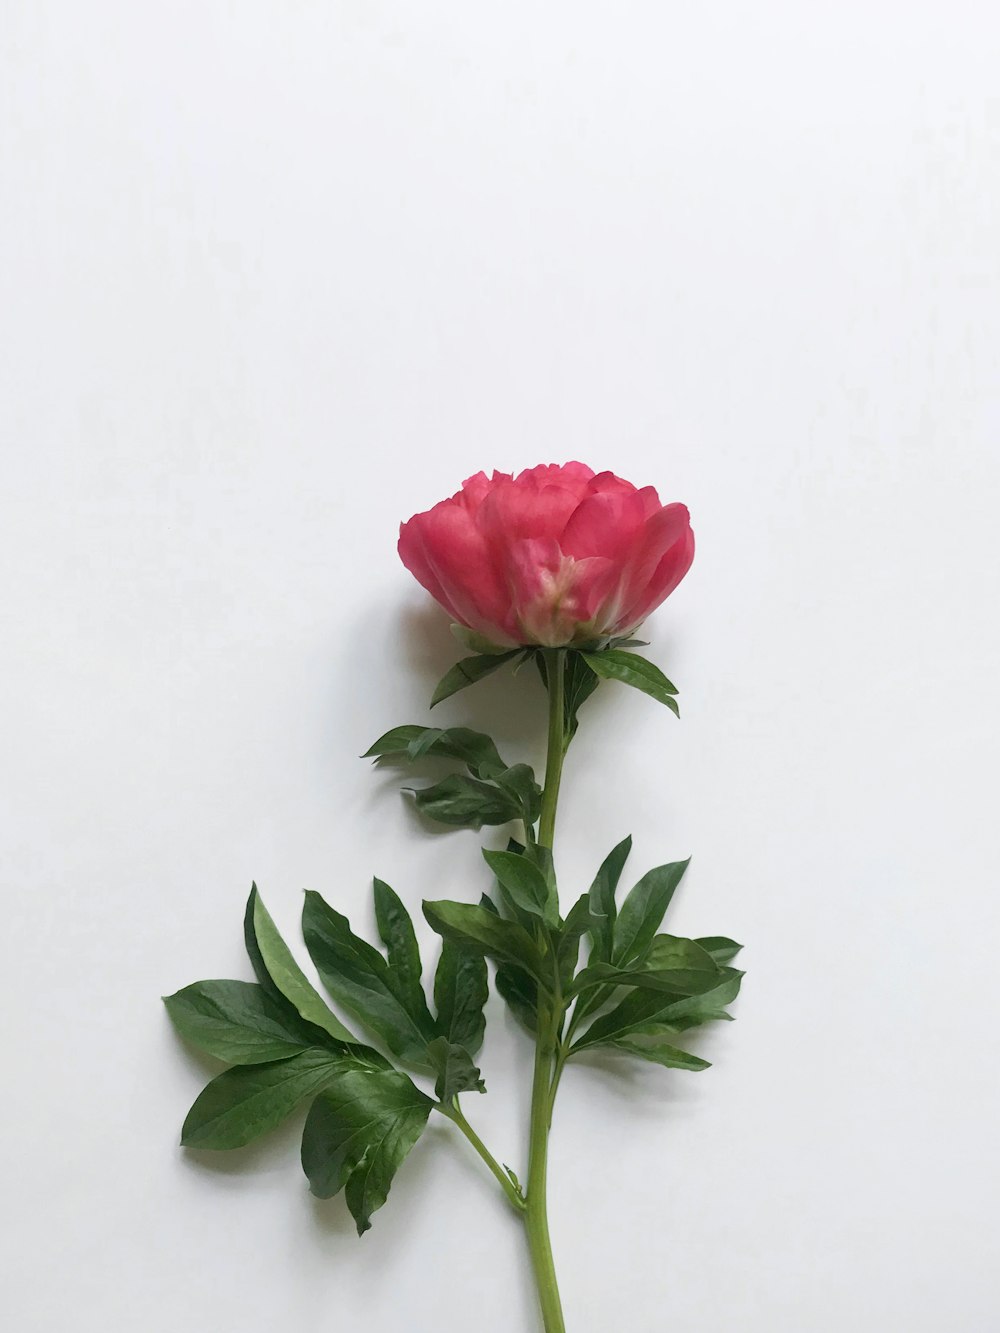 Flor de pétalos rosados sobre superficie blanca